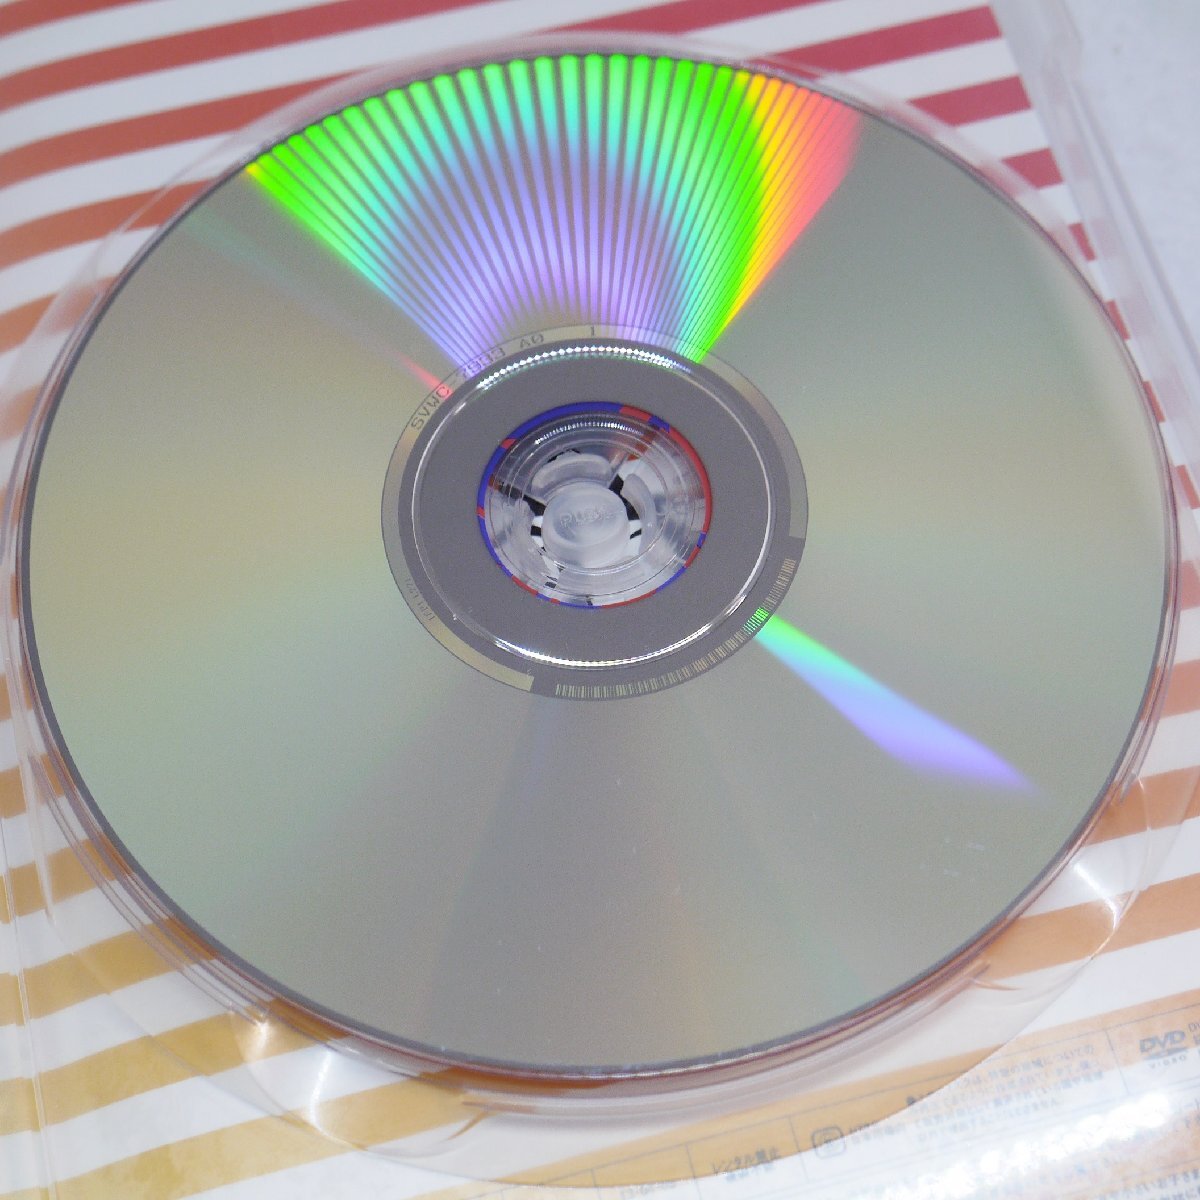  вне установленной формы бесплатная доставка USED товар * хранение товар LiSA best day,best way Lisa CD DVD фото книжка Aniplexanip Rex 